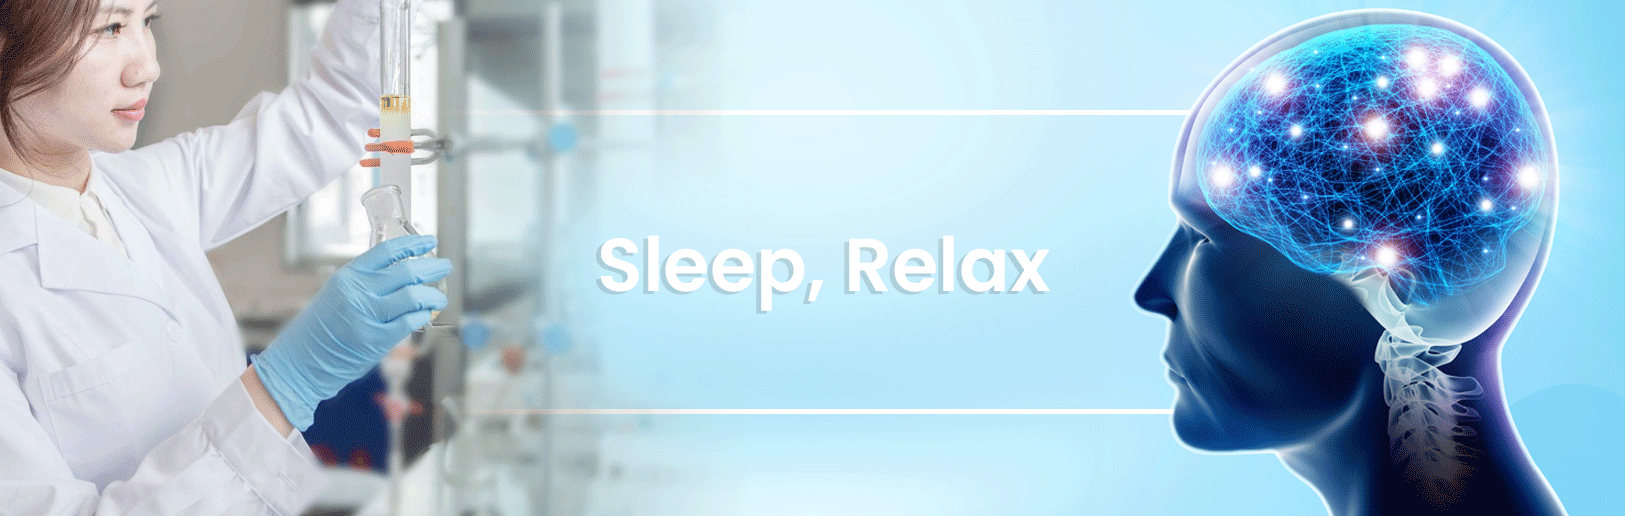 Sleep, Relax อาหารเสริม เพื่อช่วยให้นอนหลับง่าย ผ่อนคลาย